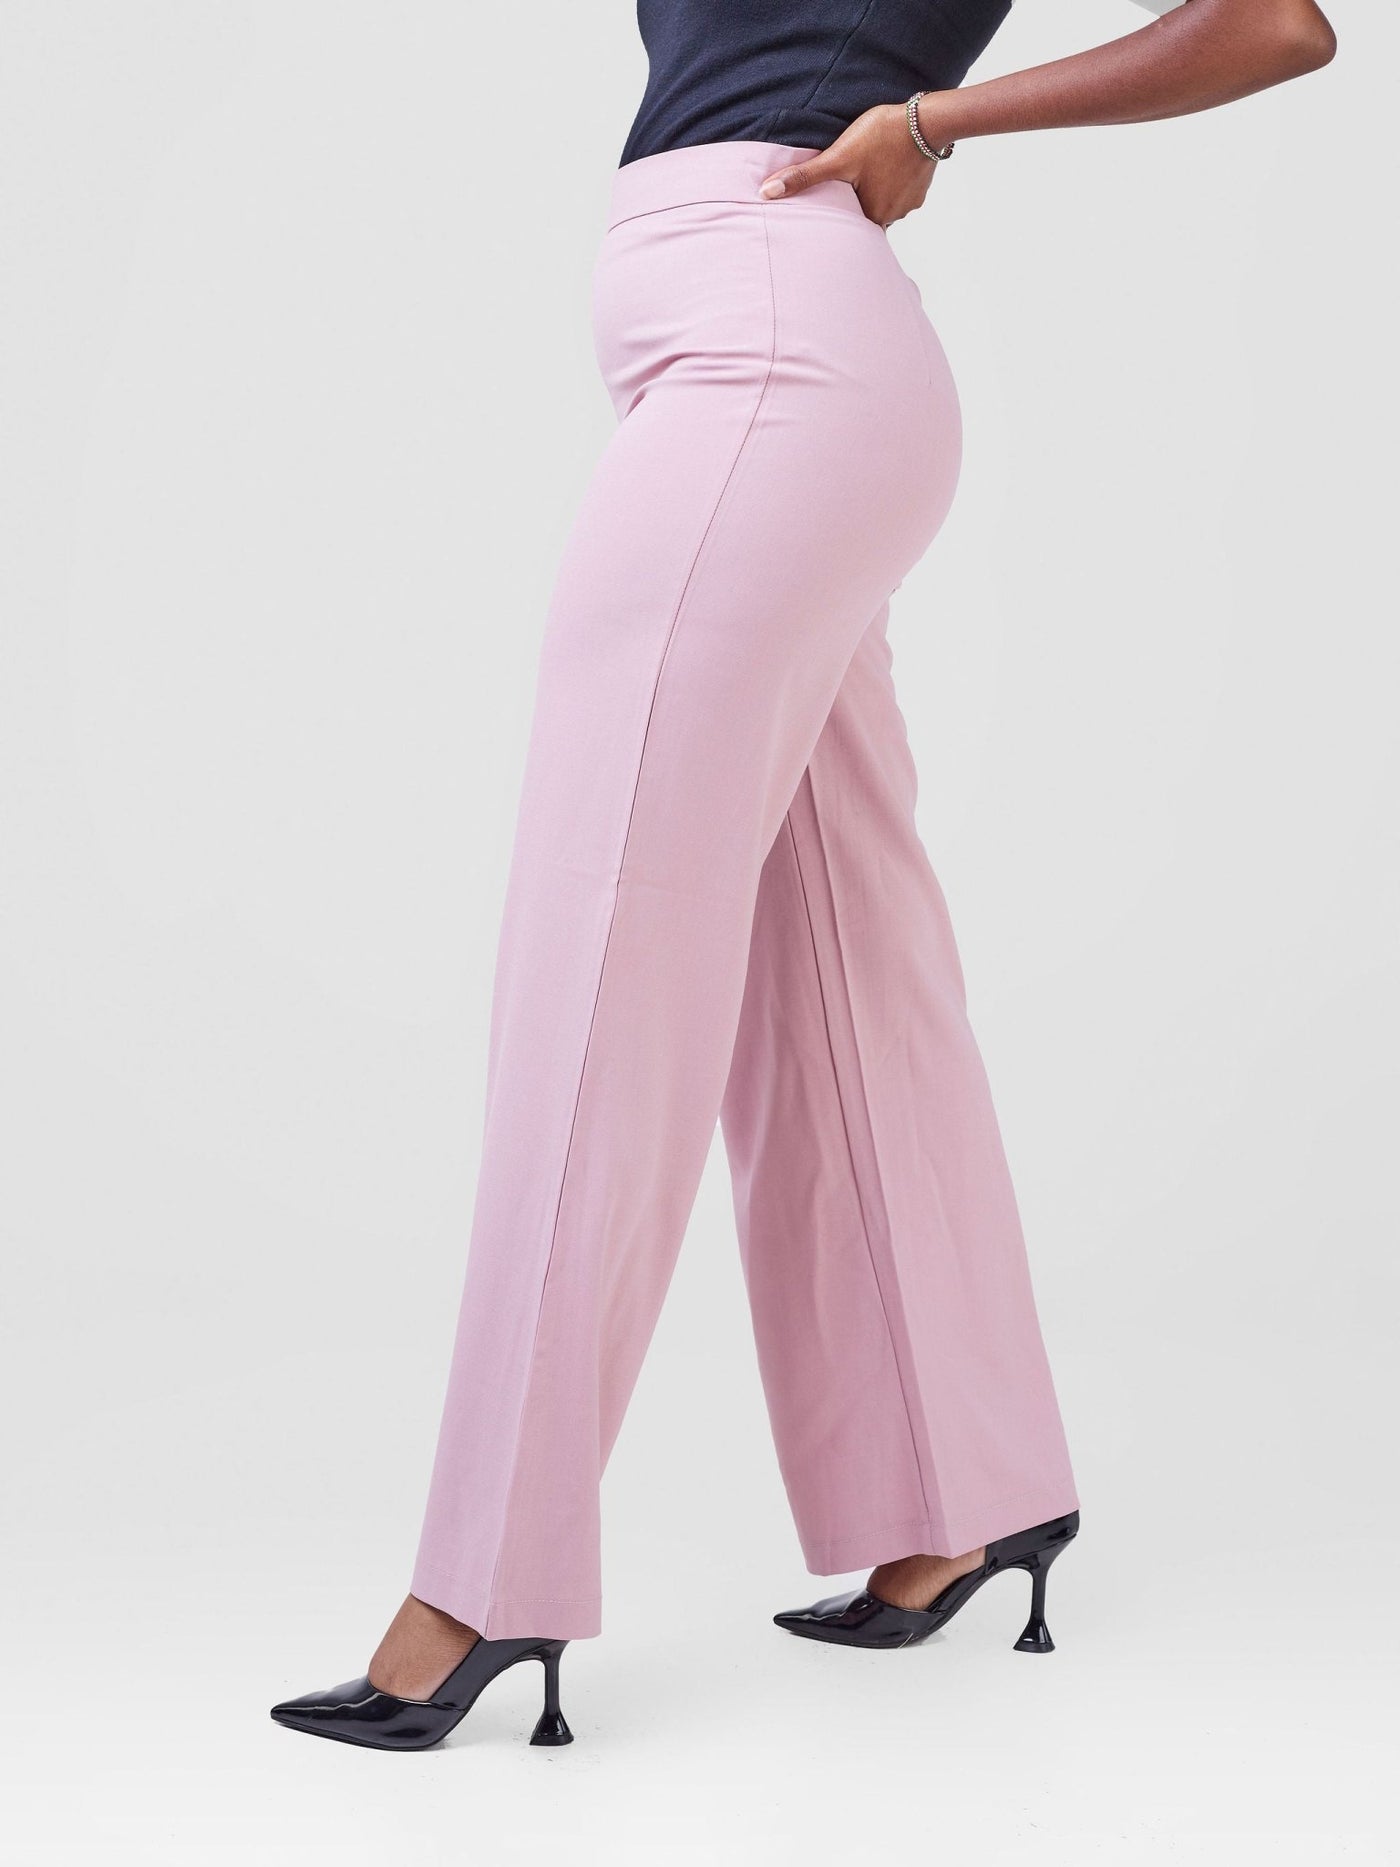 Anika Straight Leg Dress Pants With Zipper At The Back - Pink - Shopzetu